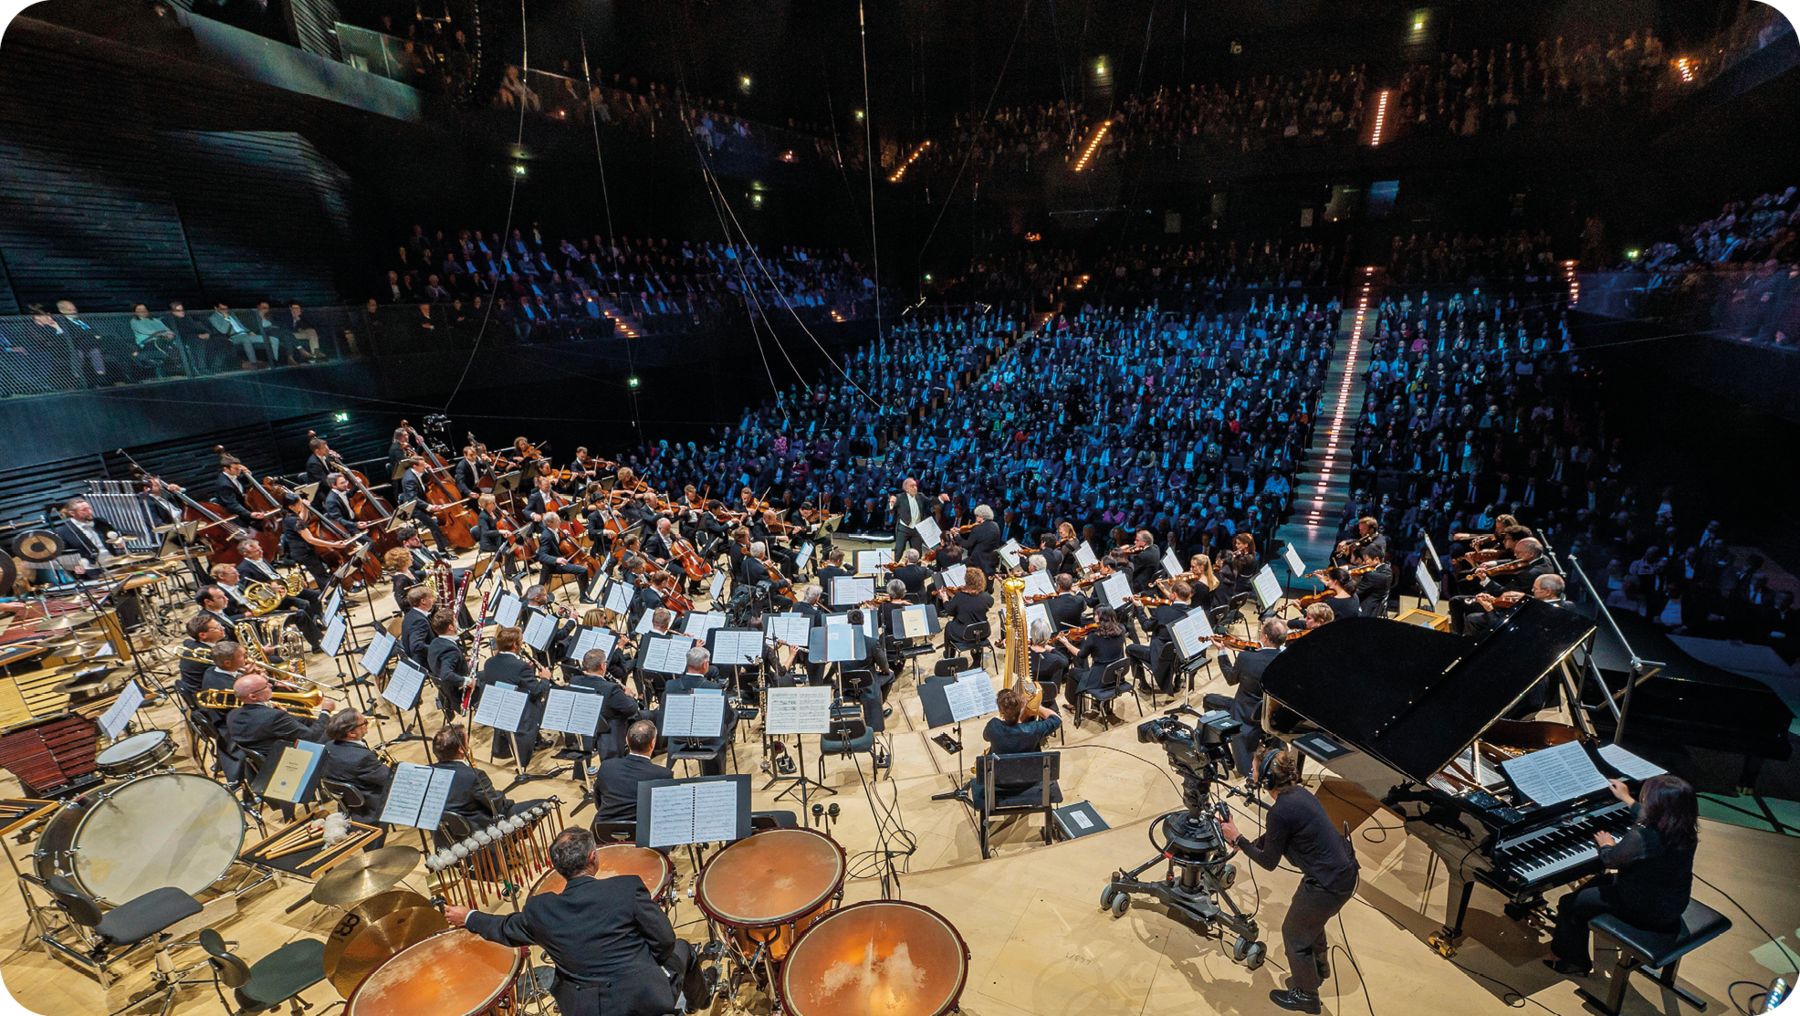 Fotografia. Vista de cima de uma orquestra iluminada e com diversos músicos sentados e tocando diferentes instrumentos musicais. No canto inferior direito, há um piano preto. Ao fundo, uma plateia assiste ao concerto.